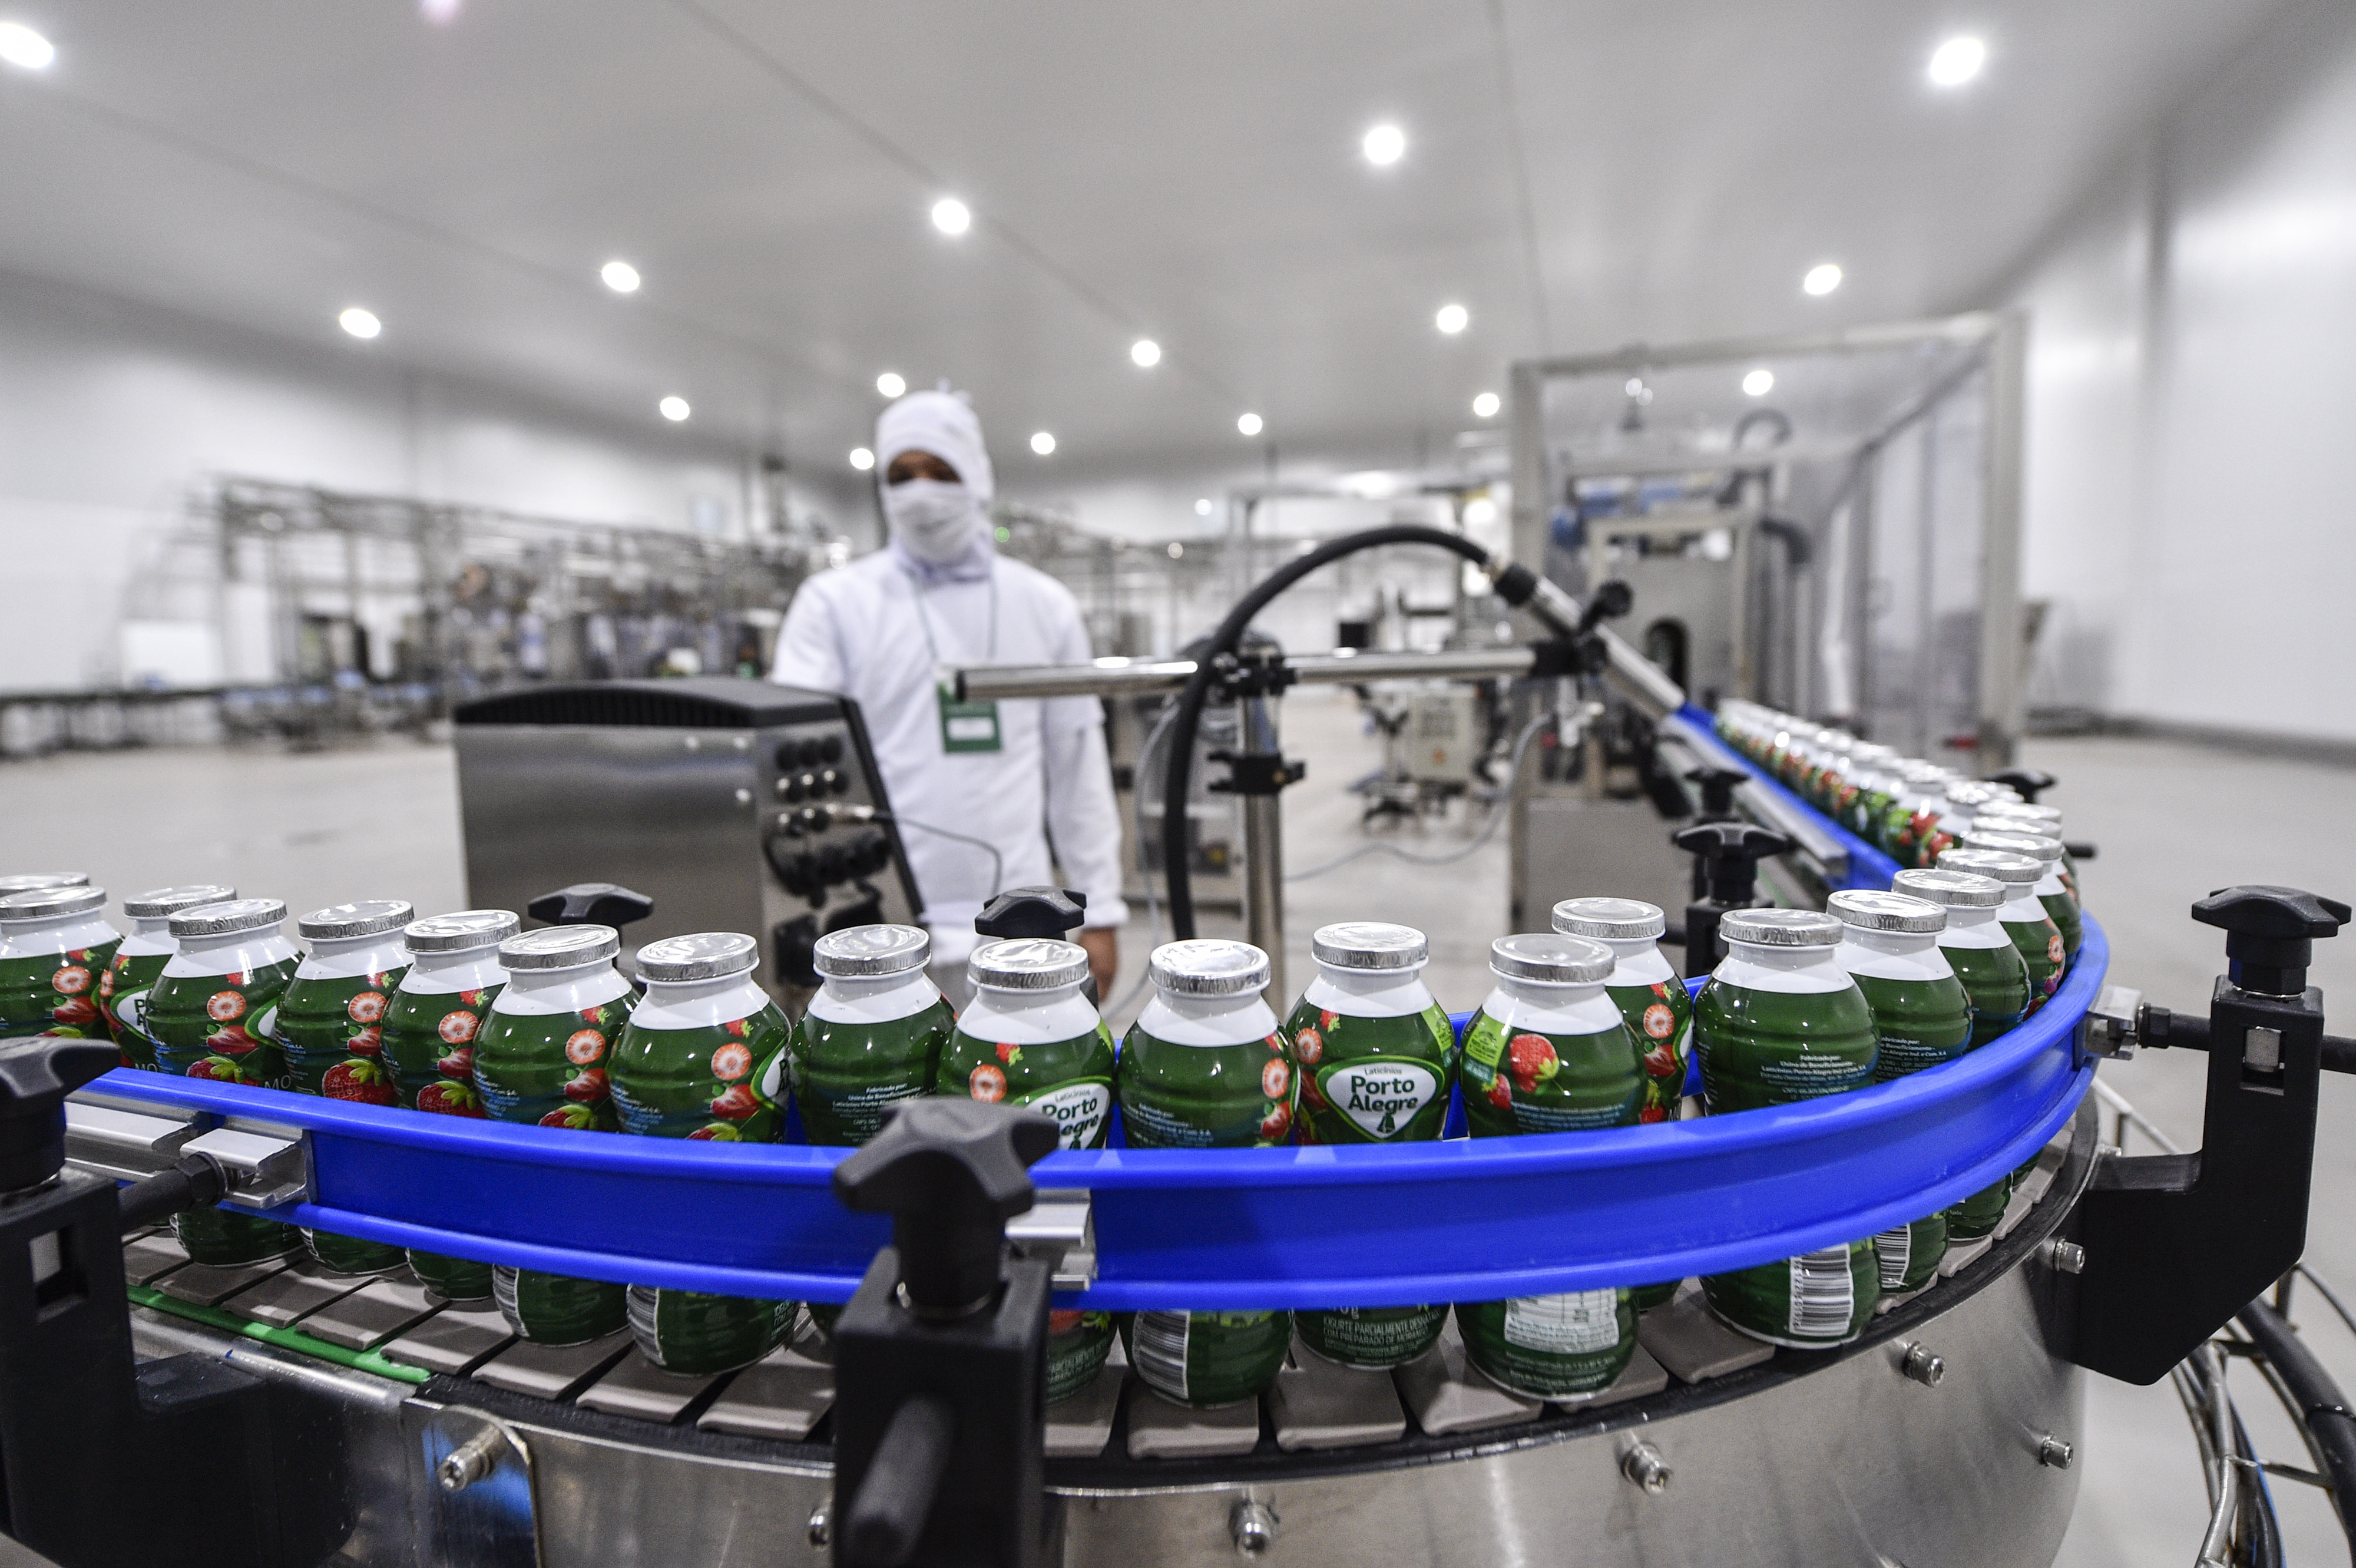 Produção de iogurtes na nova fábrica da Laticínios Porto Alegre em Antônio Carlos. Foto: Agência i7